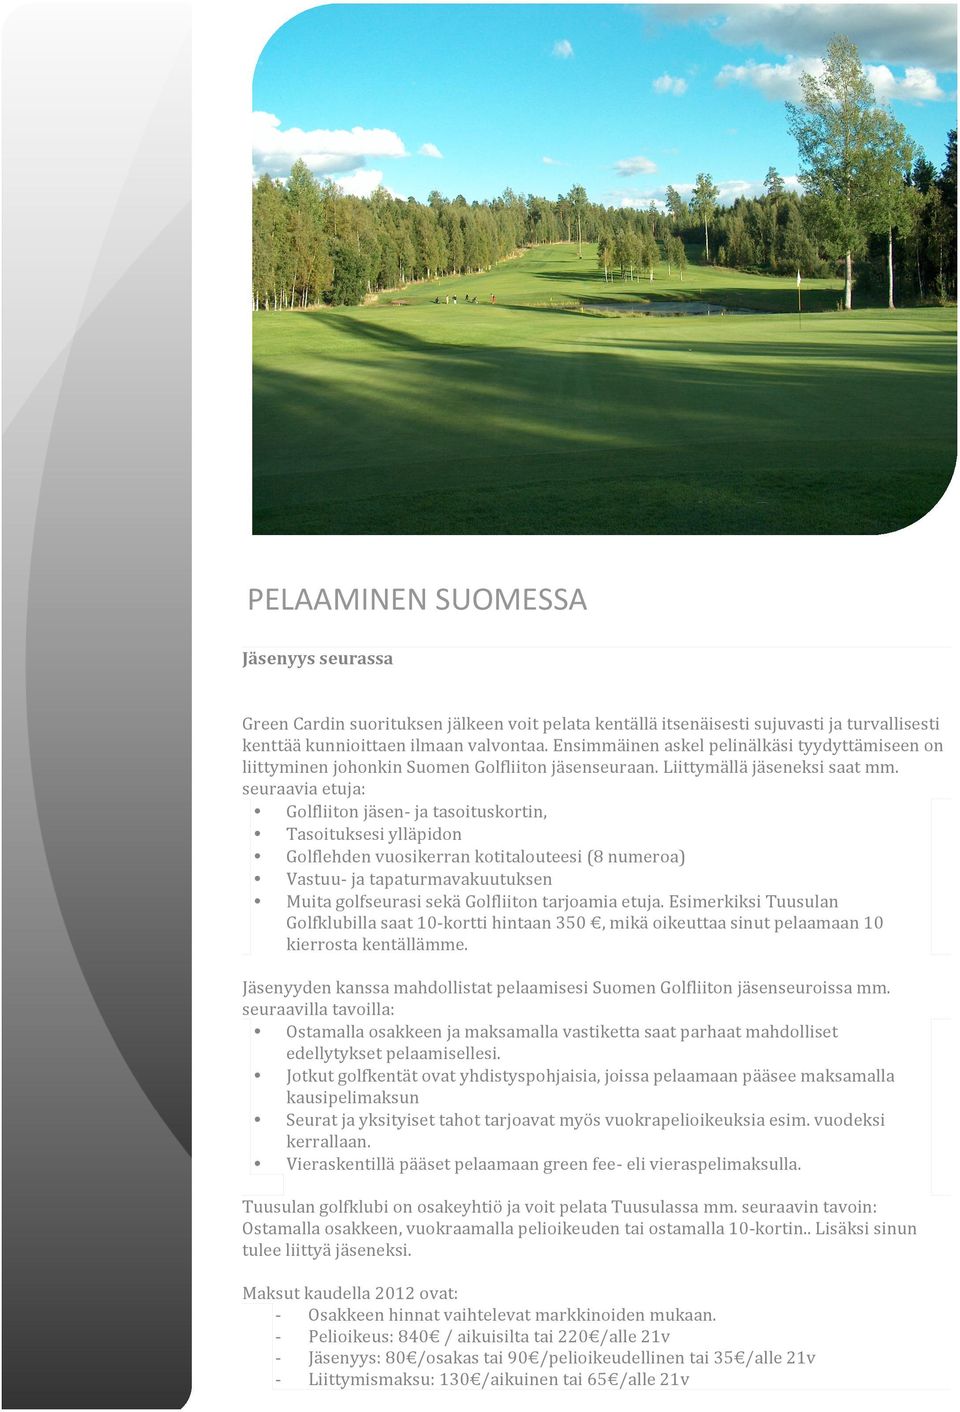 seuraavia etuja: Golfliiton jäsen ja tasoituskortin, Tasoituksesi ylläpidon Golflehden vuosikerran kotitalouteesi (8 numeroa) Vastuu ja tapaturmavakuutuksen Muita golfseurasi sekä Golfliiton